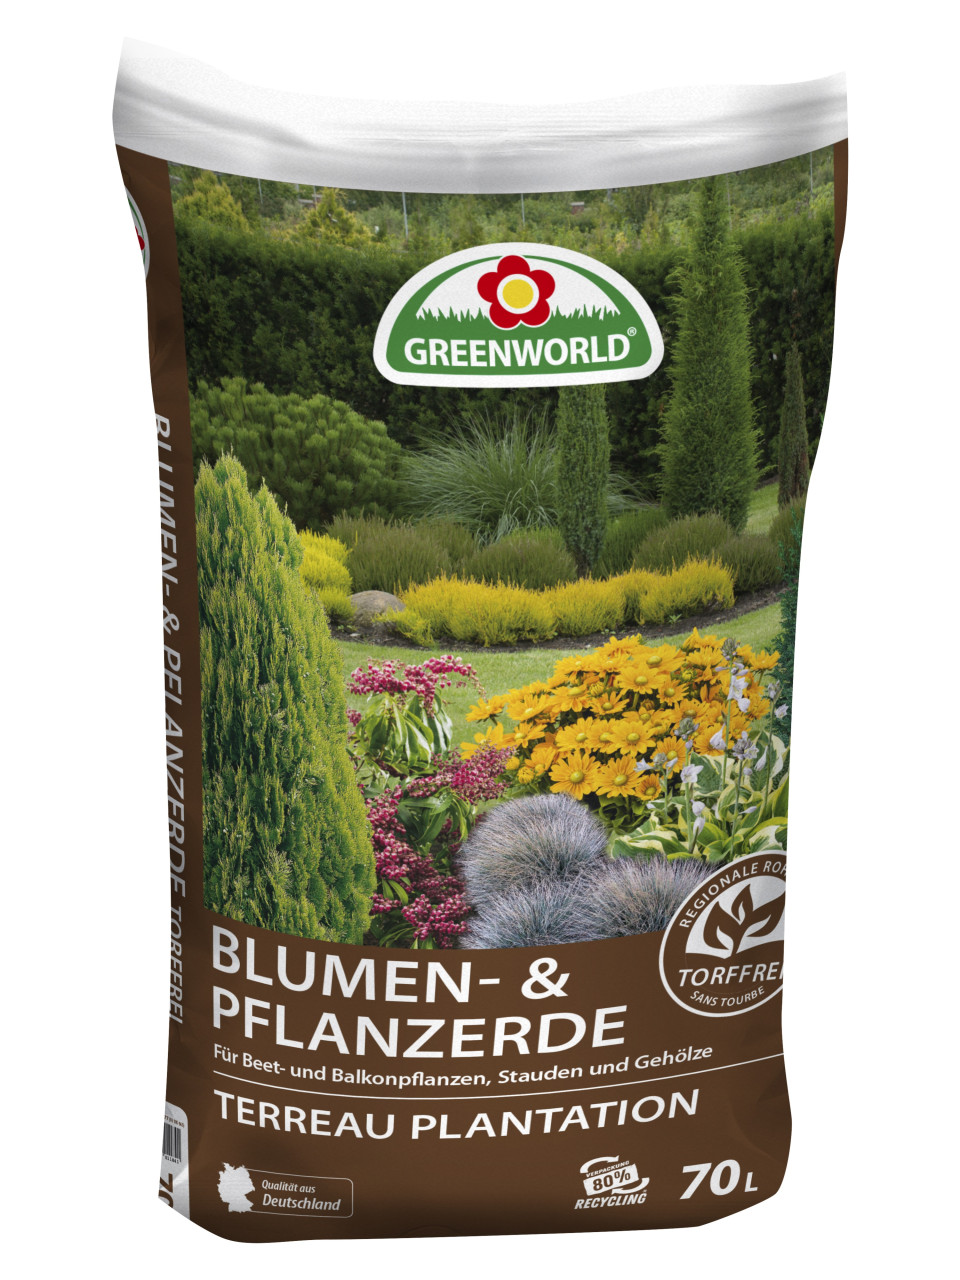 Greenworld Blumen und Pflanzerde torffrei 70 L von Weitere